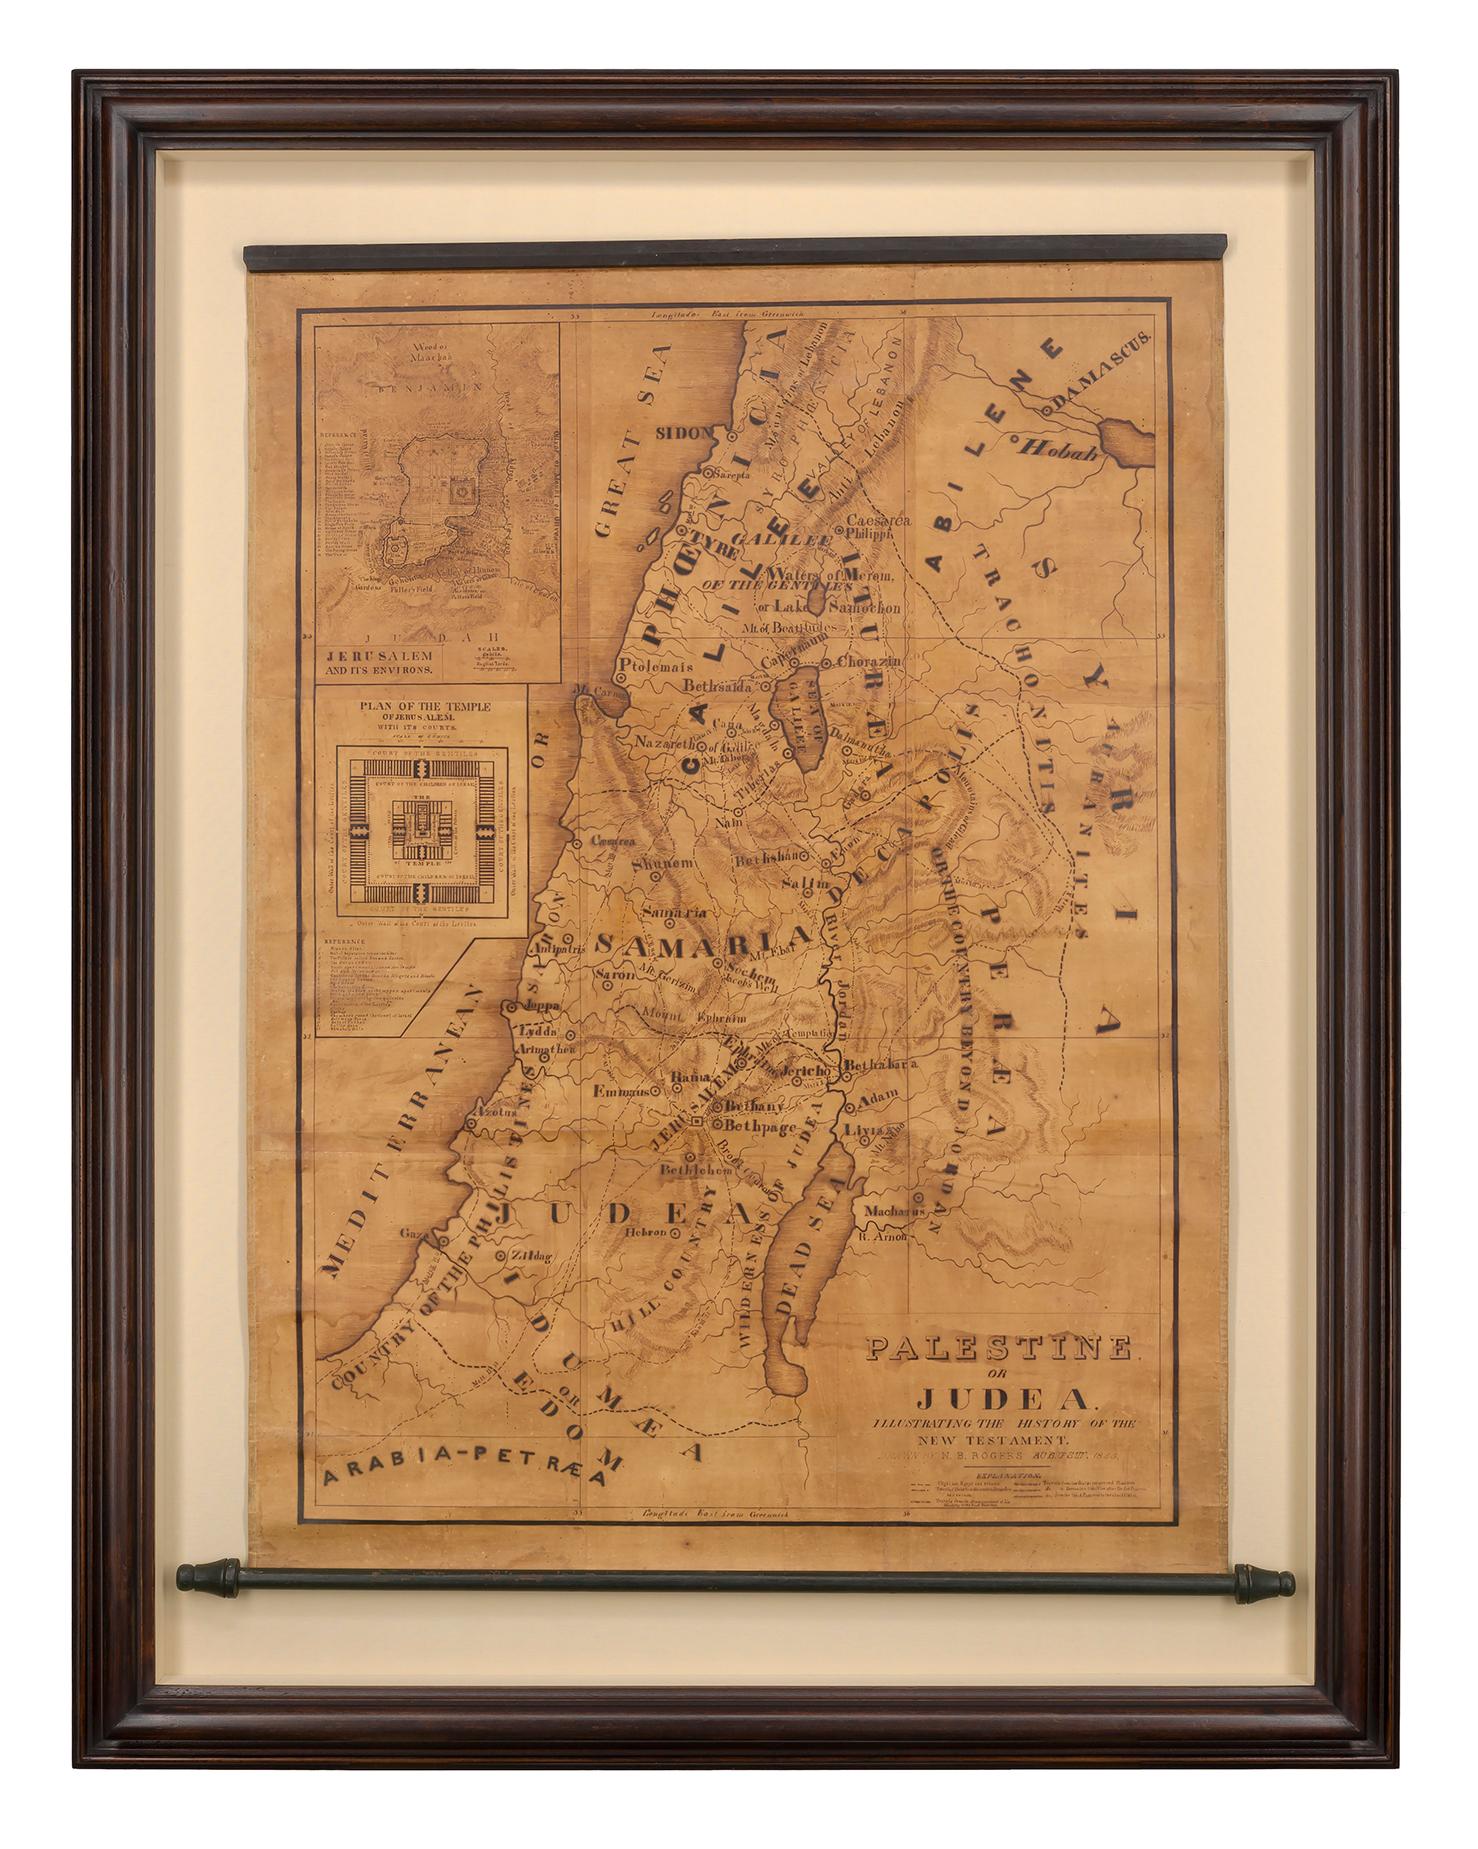 Karte von Palästina oder Judea, die Geschichte des Neuen Testaments illustriert – Art von Rev. Nathan B. Rogers